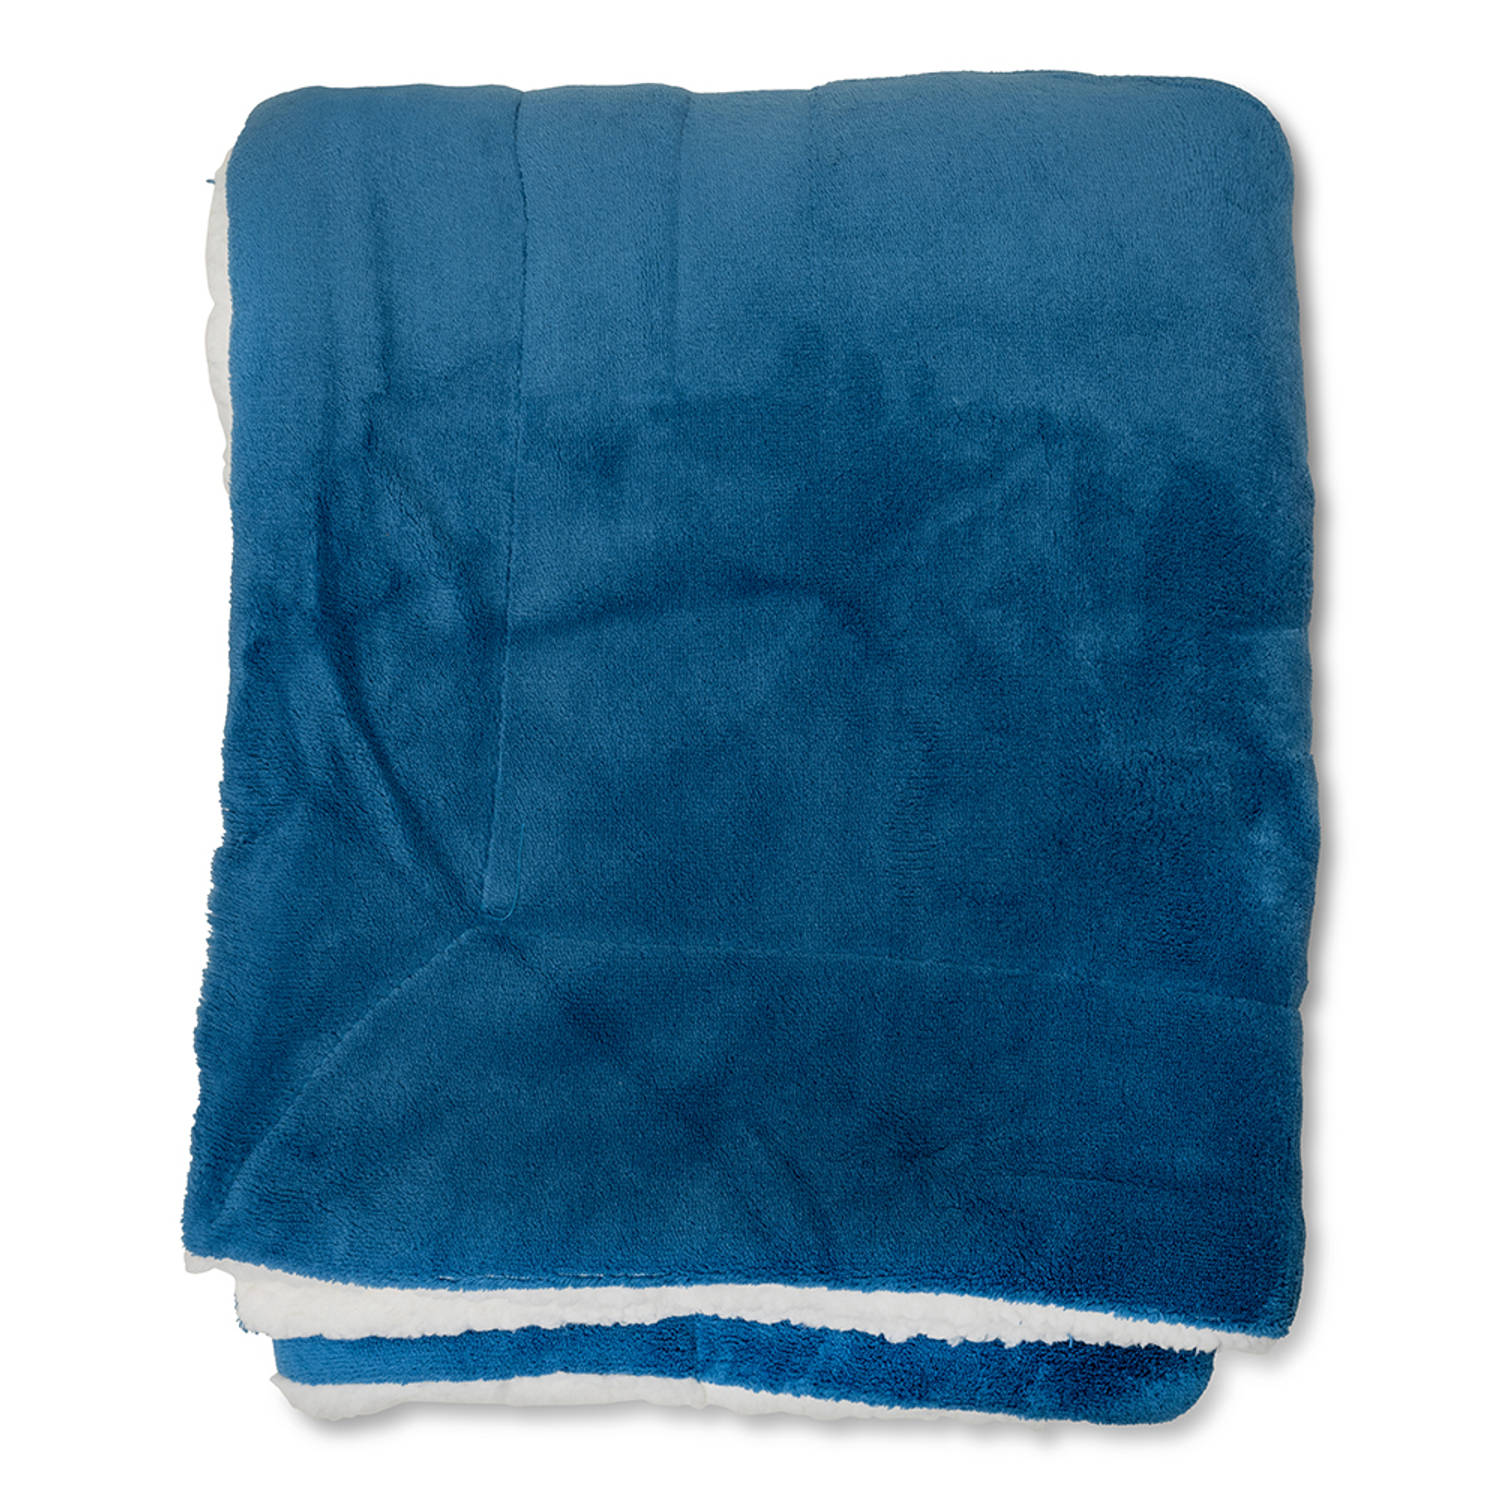 Wicotex-Plaid-deken-fleece plaid Espoo blauw 200x240cm met witte sherpa binnenkant-Zacht en warme Fleece deken.